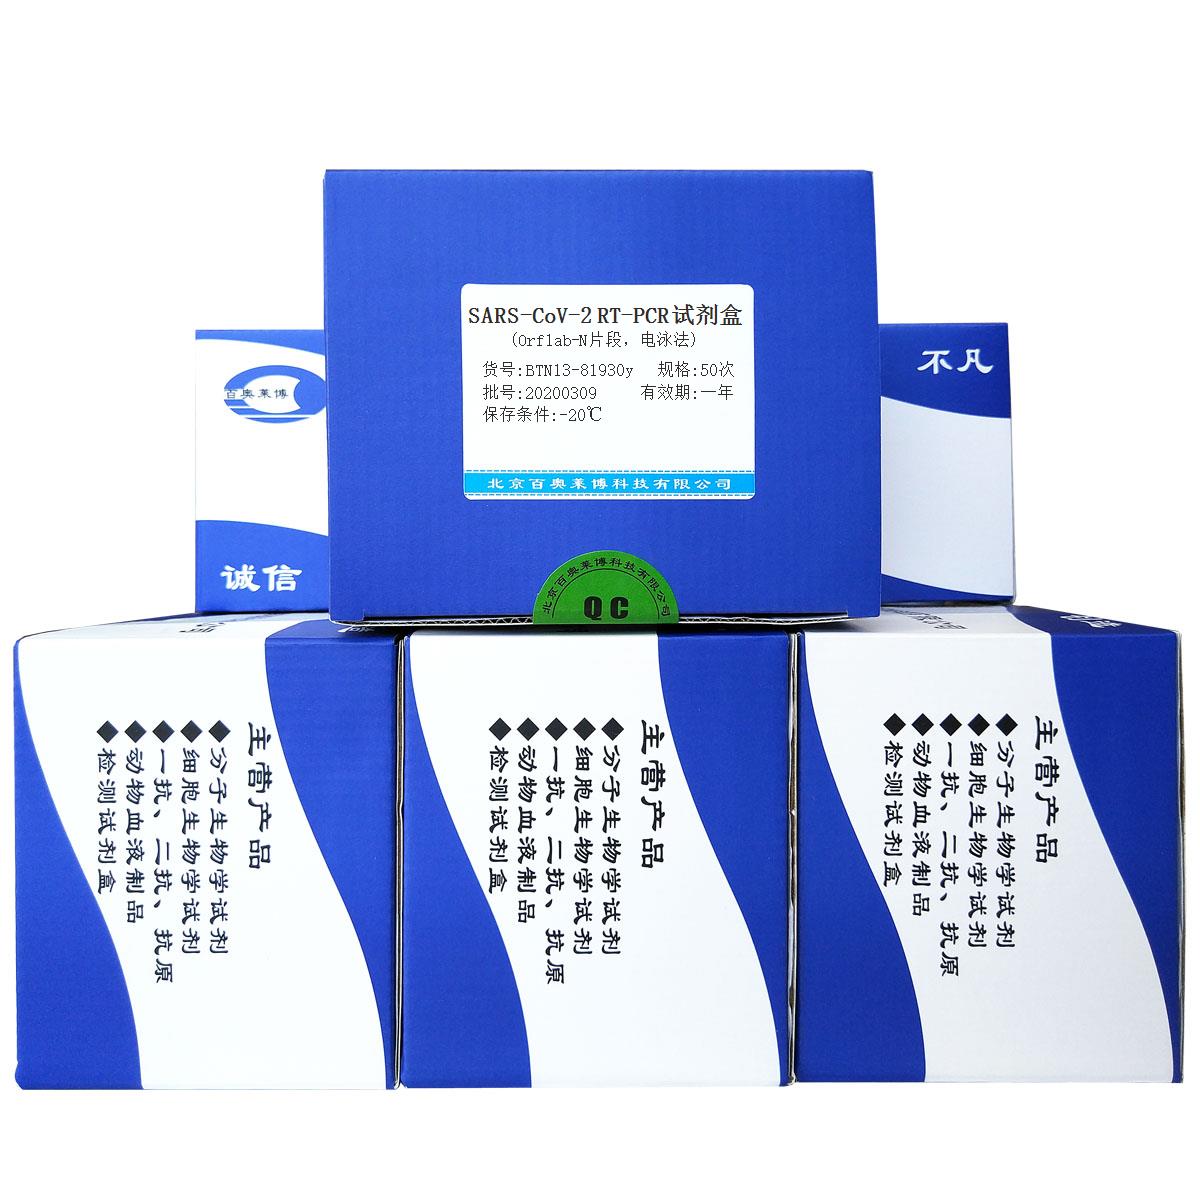 SARS-CoV-2 RT-PCR试剂盒(Orf1ab-N片段，电泳法)